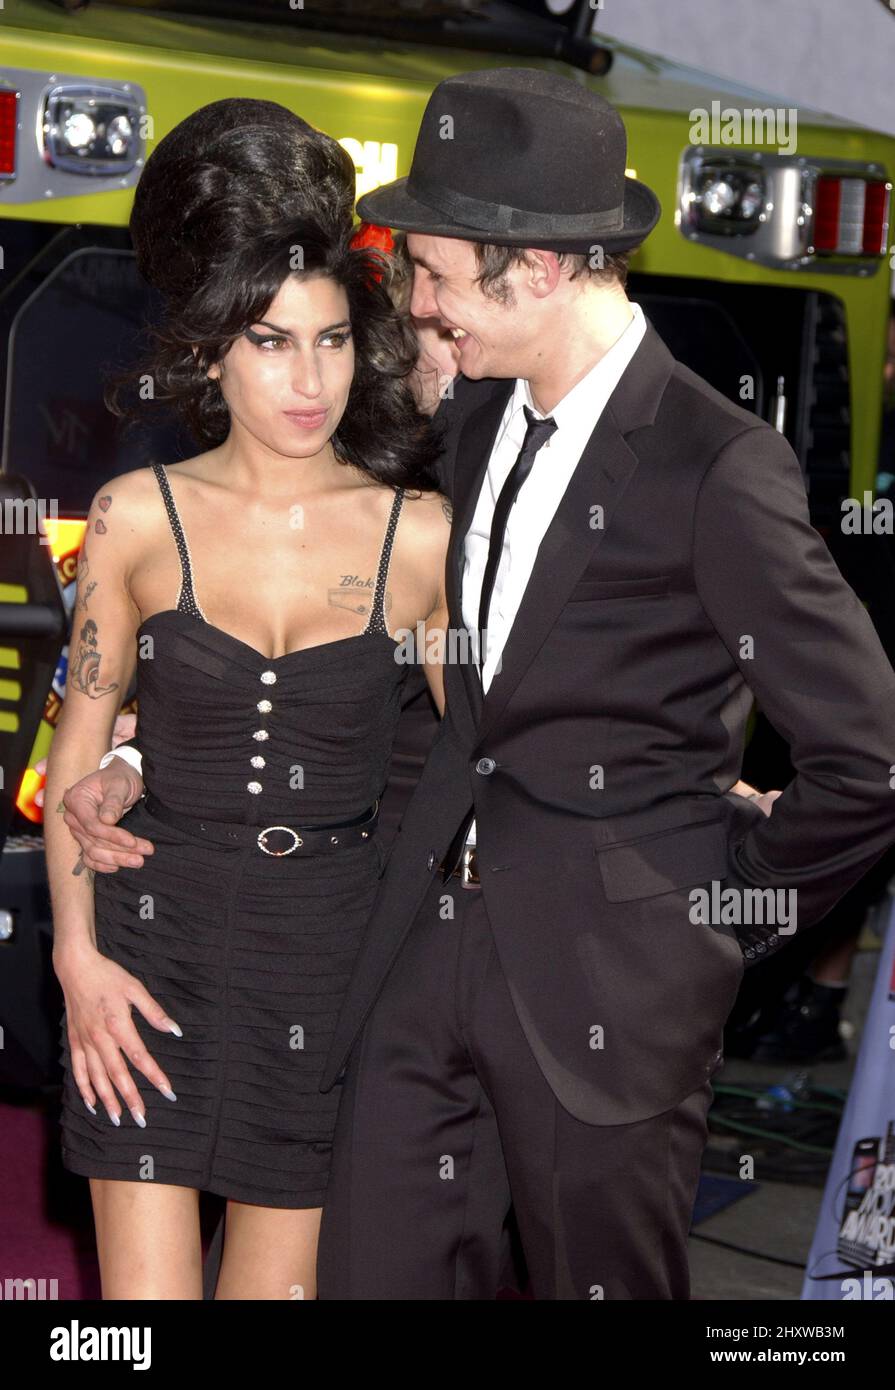 File Photo : 3 Giugno 2007 Universal City, CA. Amy Winehouse al MTV Movie Awards 2007 che si è tenuto presso l'anfiteatro Gibson presso gli Universal Studios Foto Stock